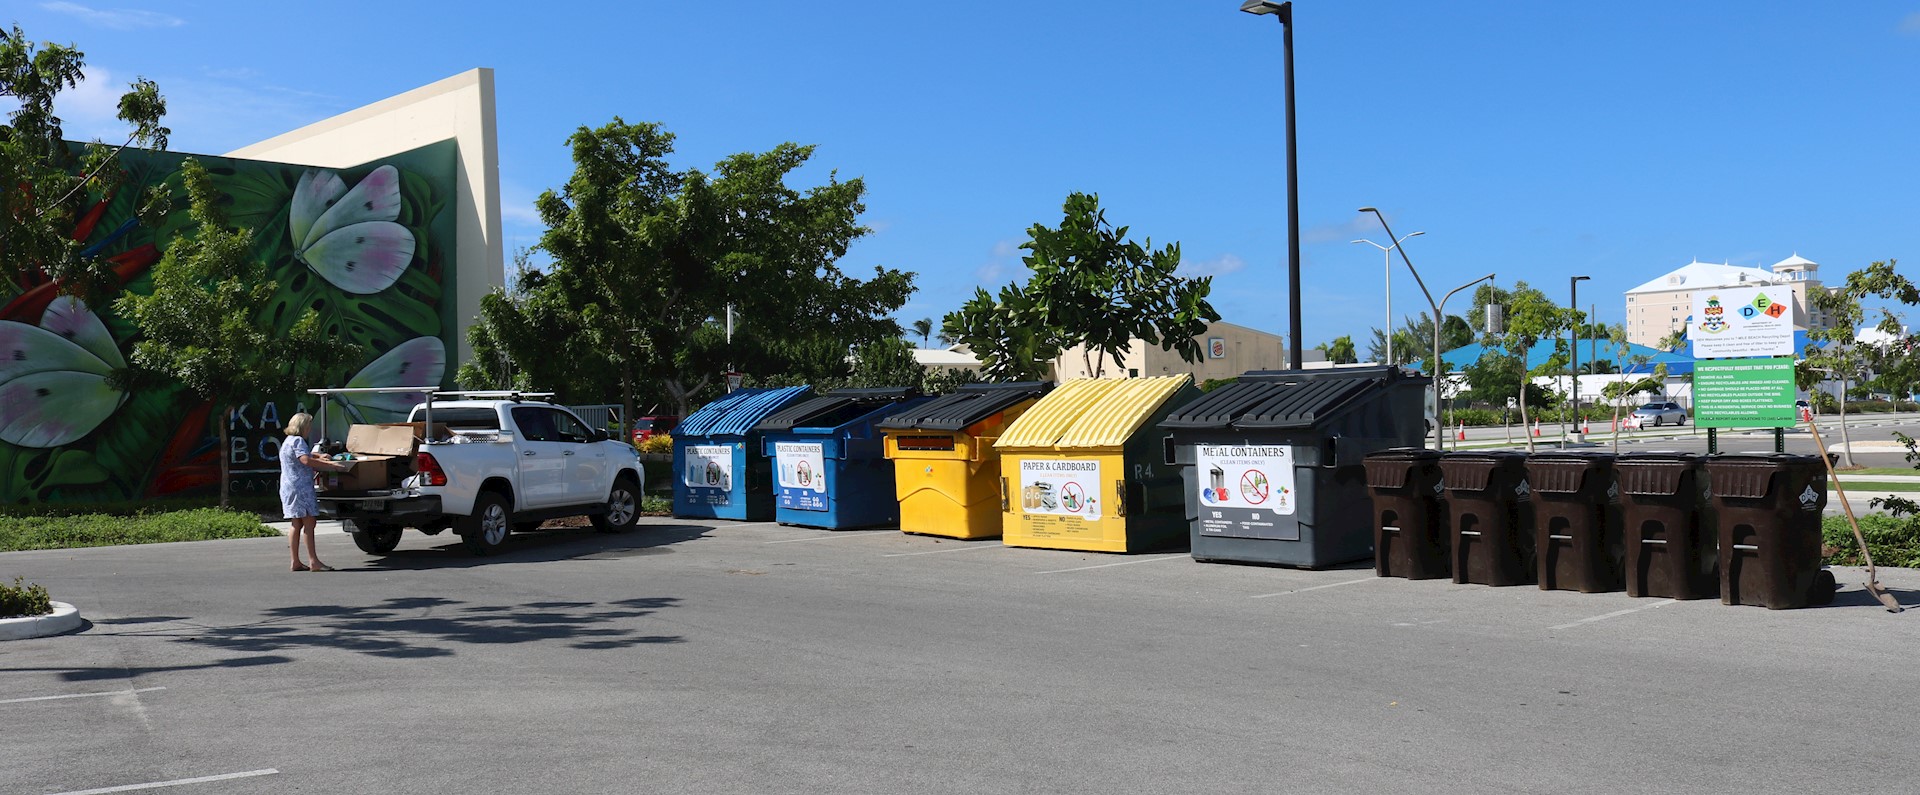 Camana Bay's new recycling station